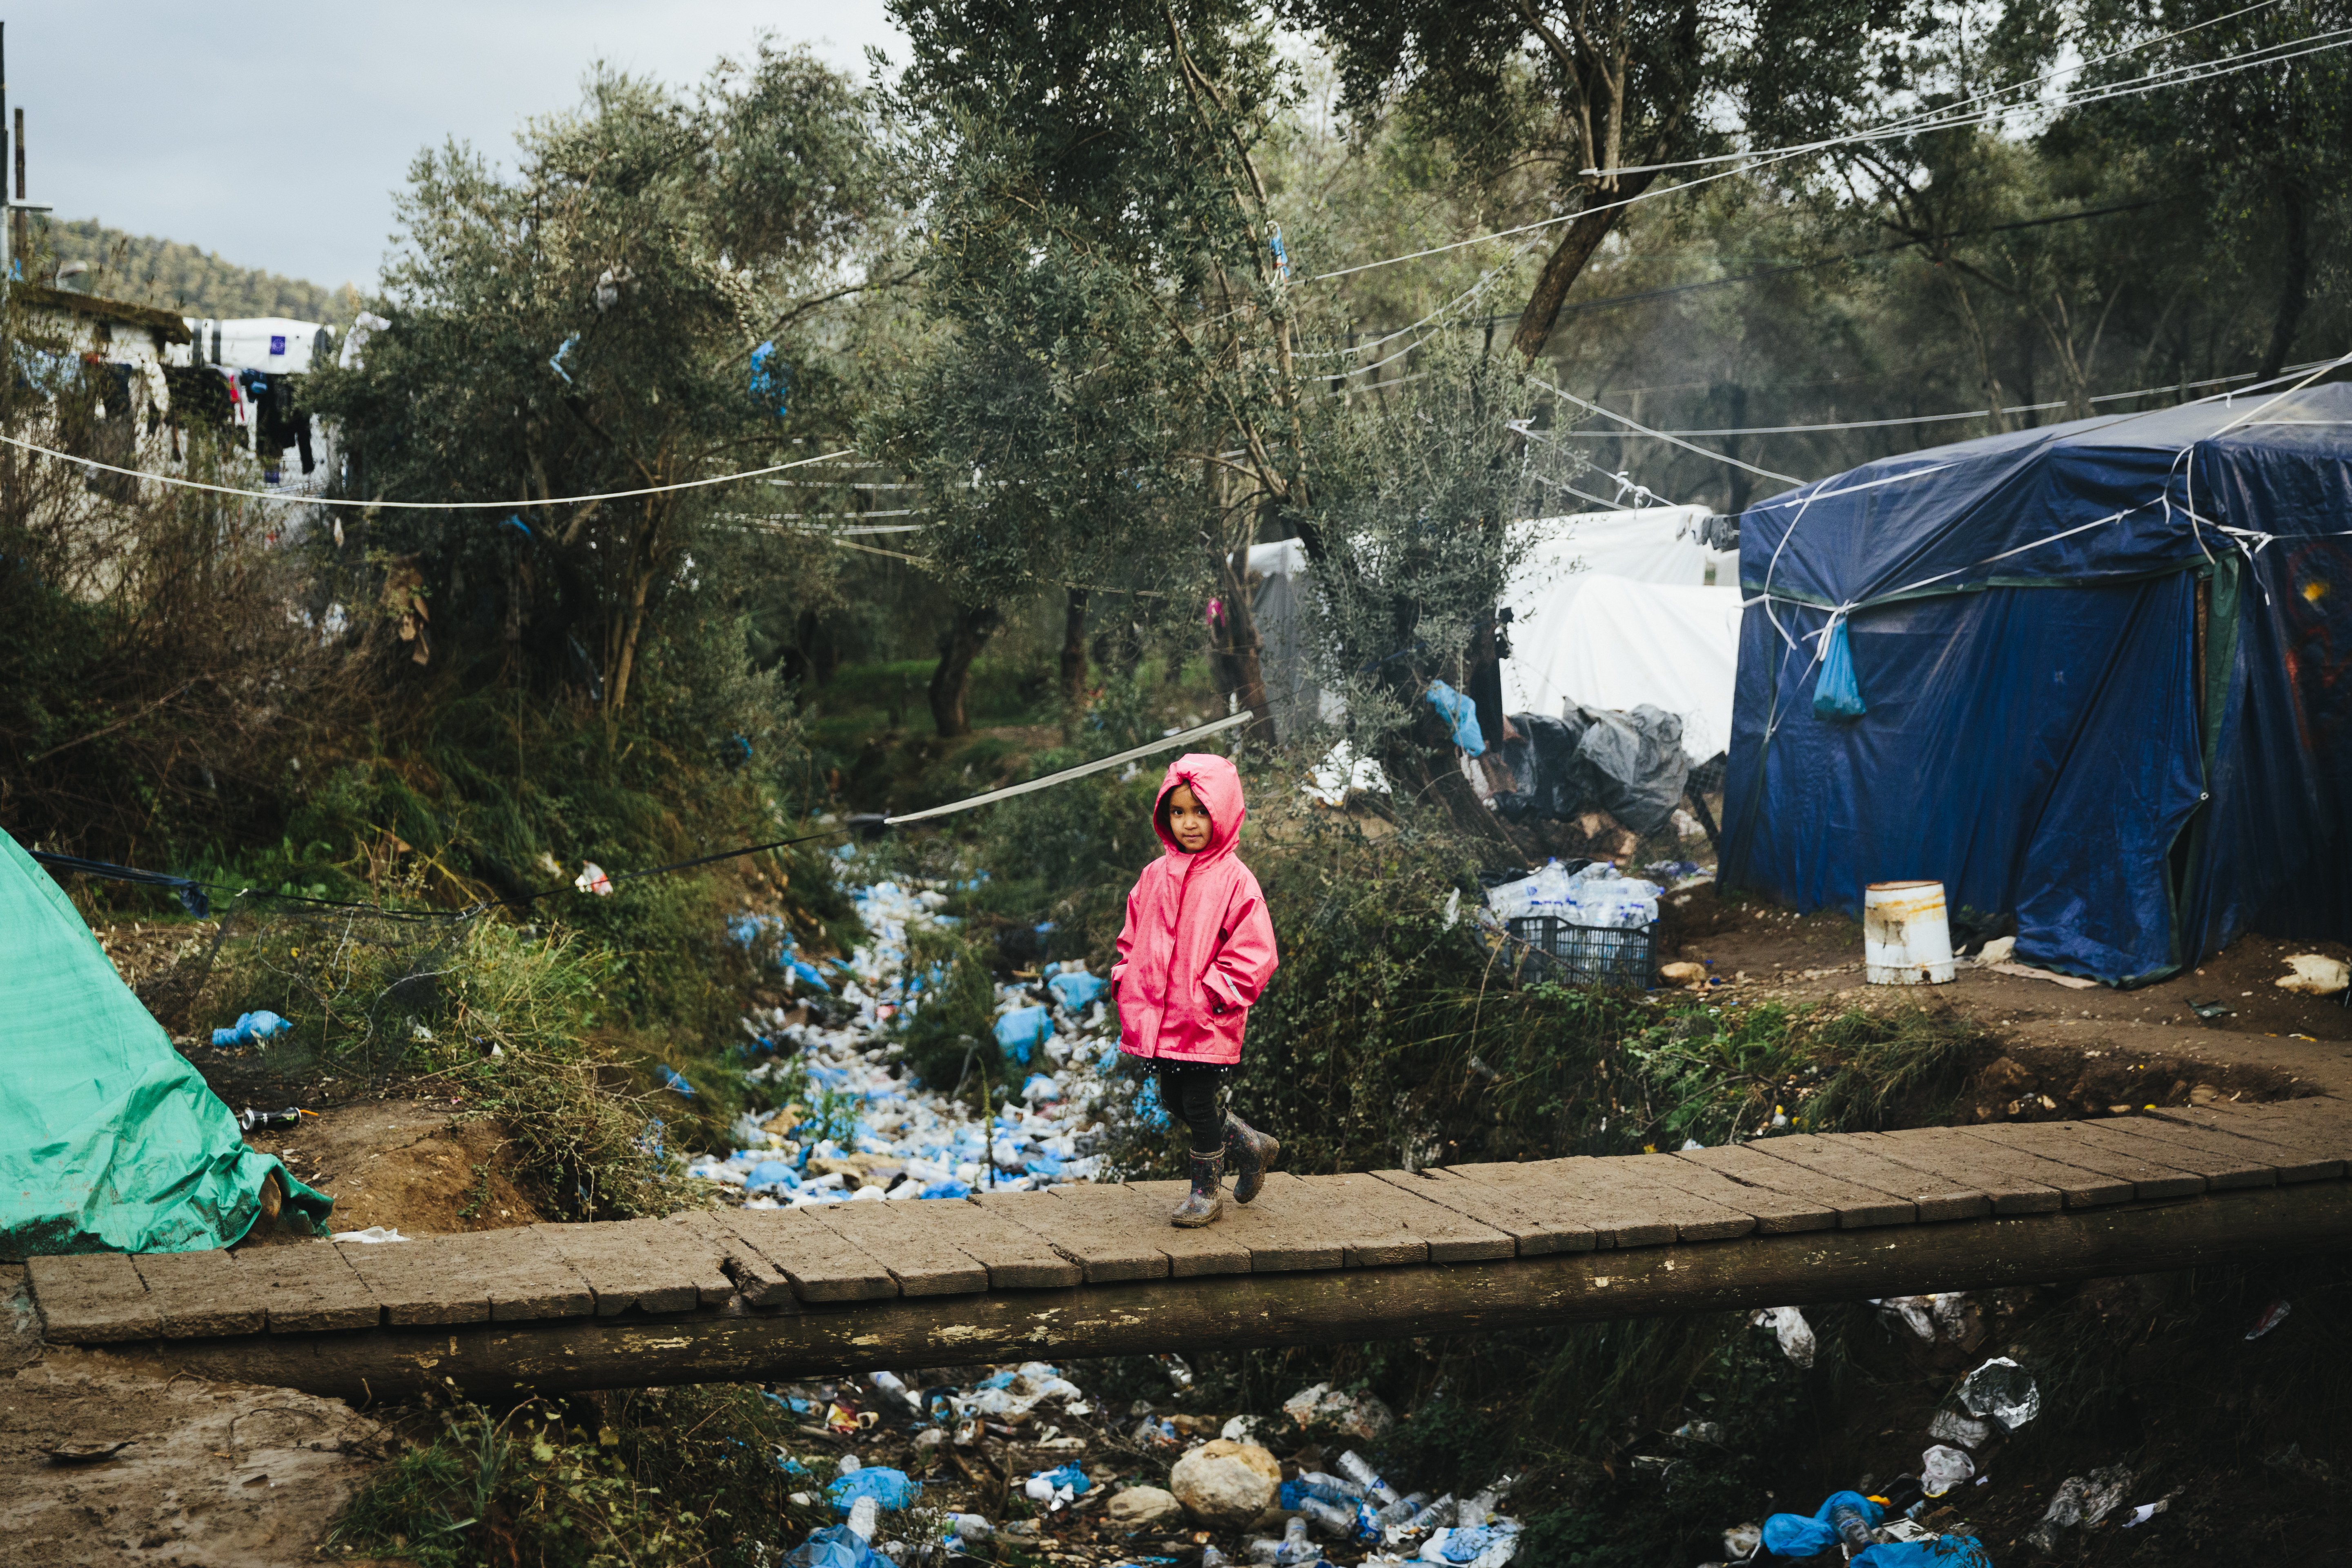 UNHCR/Achilleas Zavallis